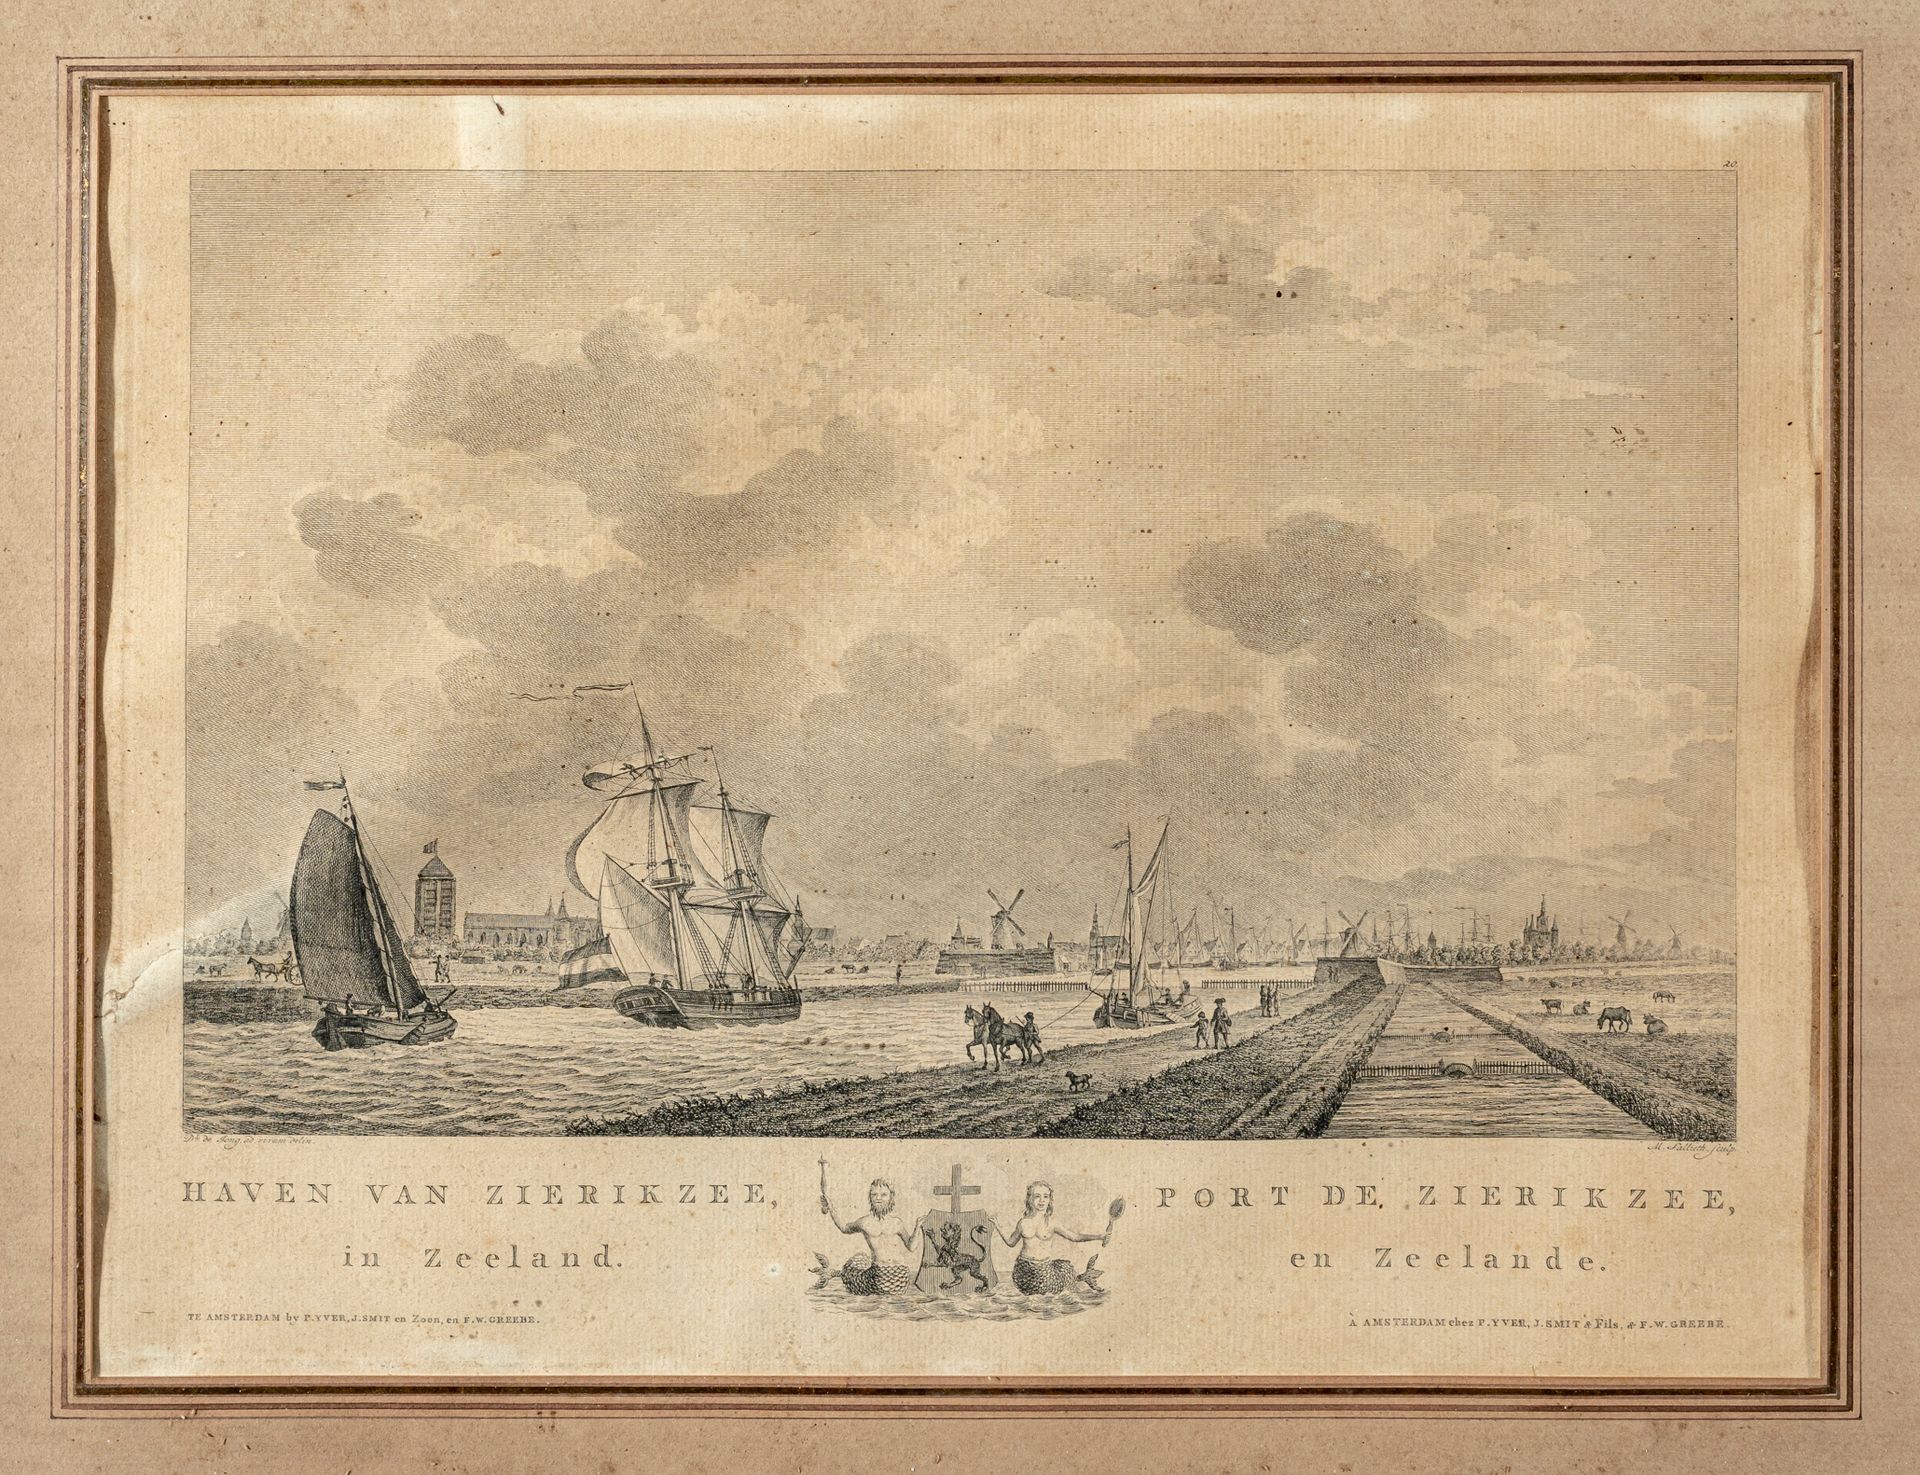 Null Mathias de Sallieth (1741-1791) según de Jong

Vistas de los puertos

Conju&hellip;